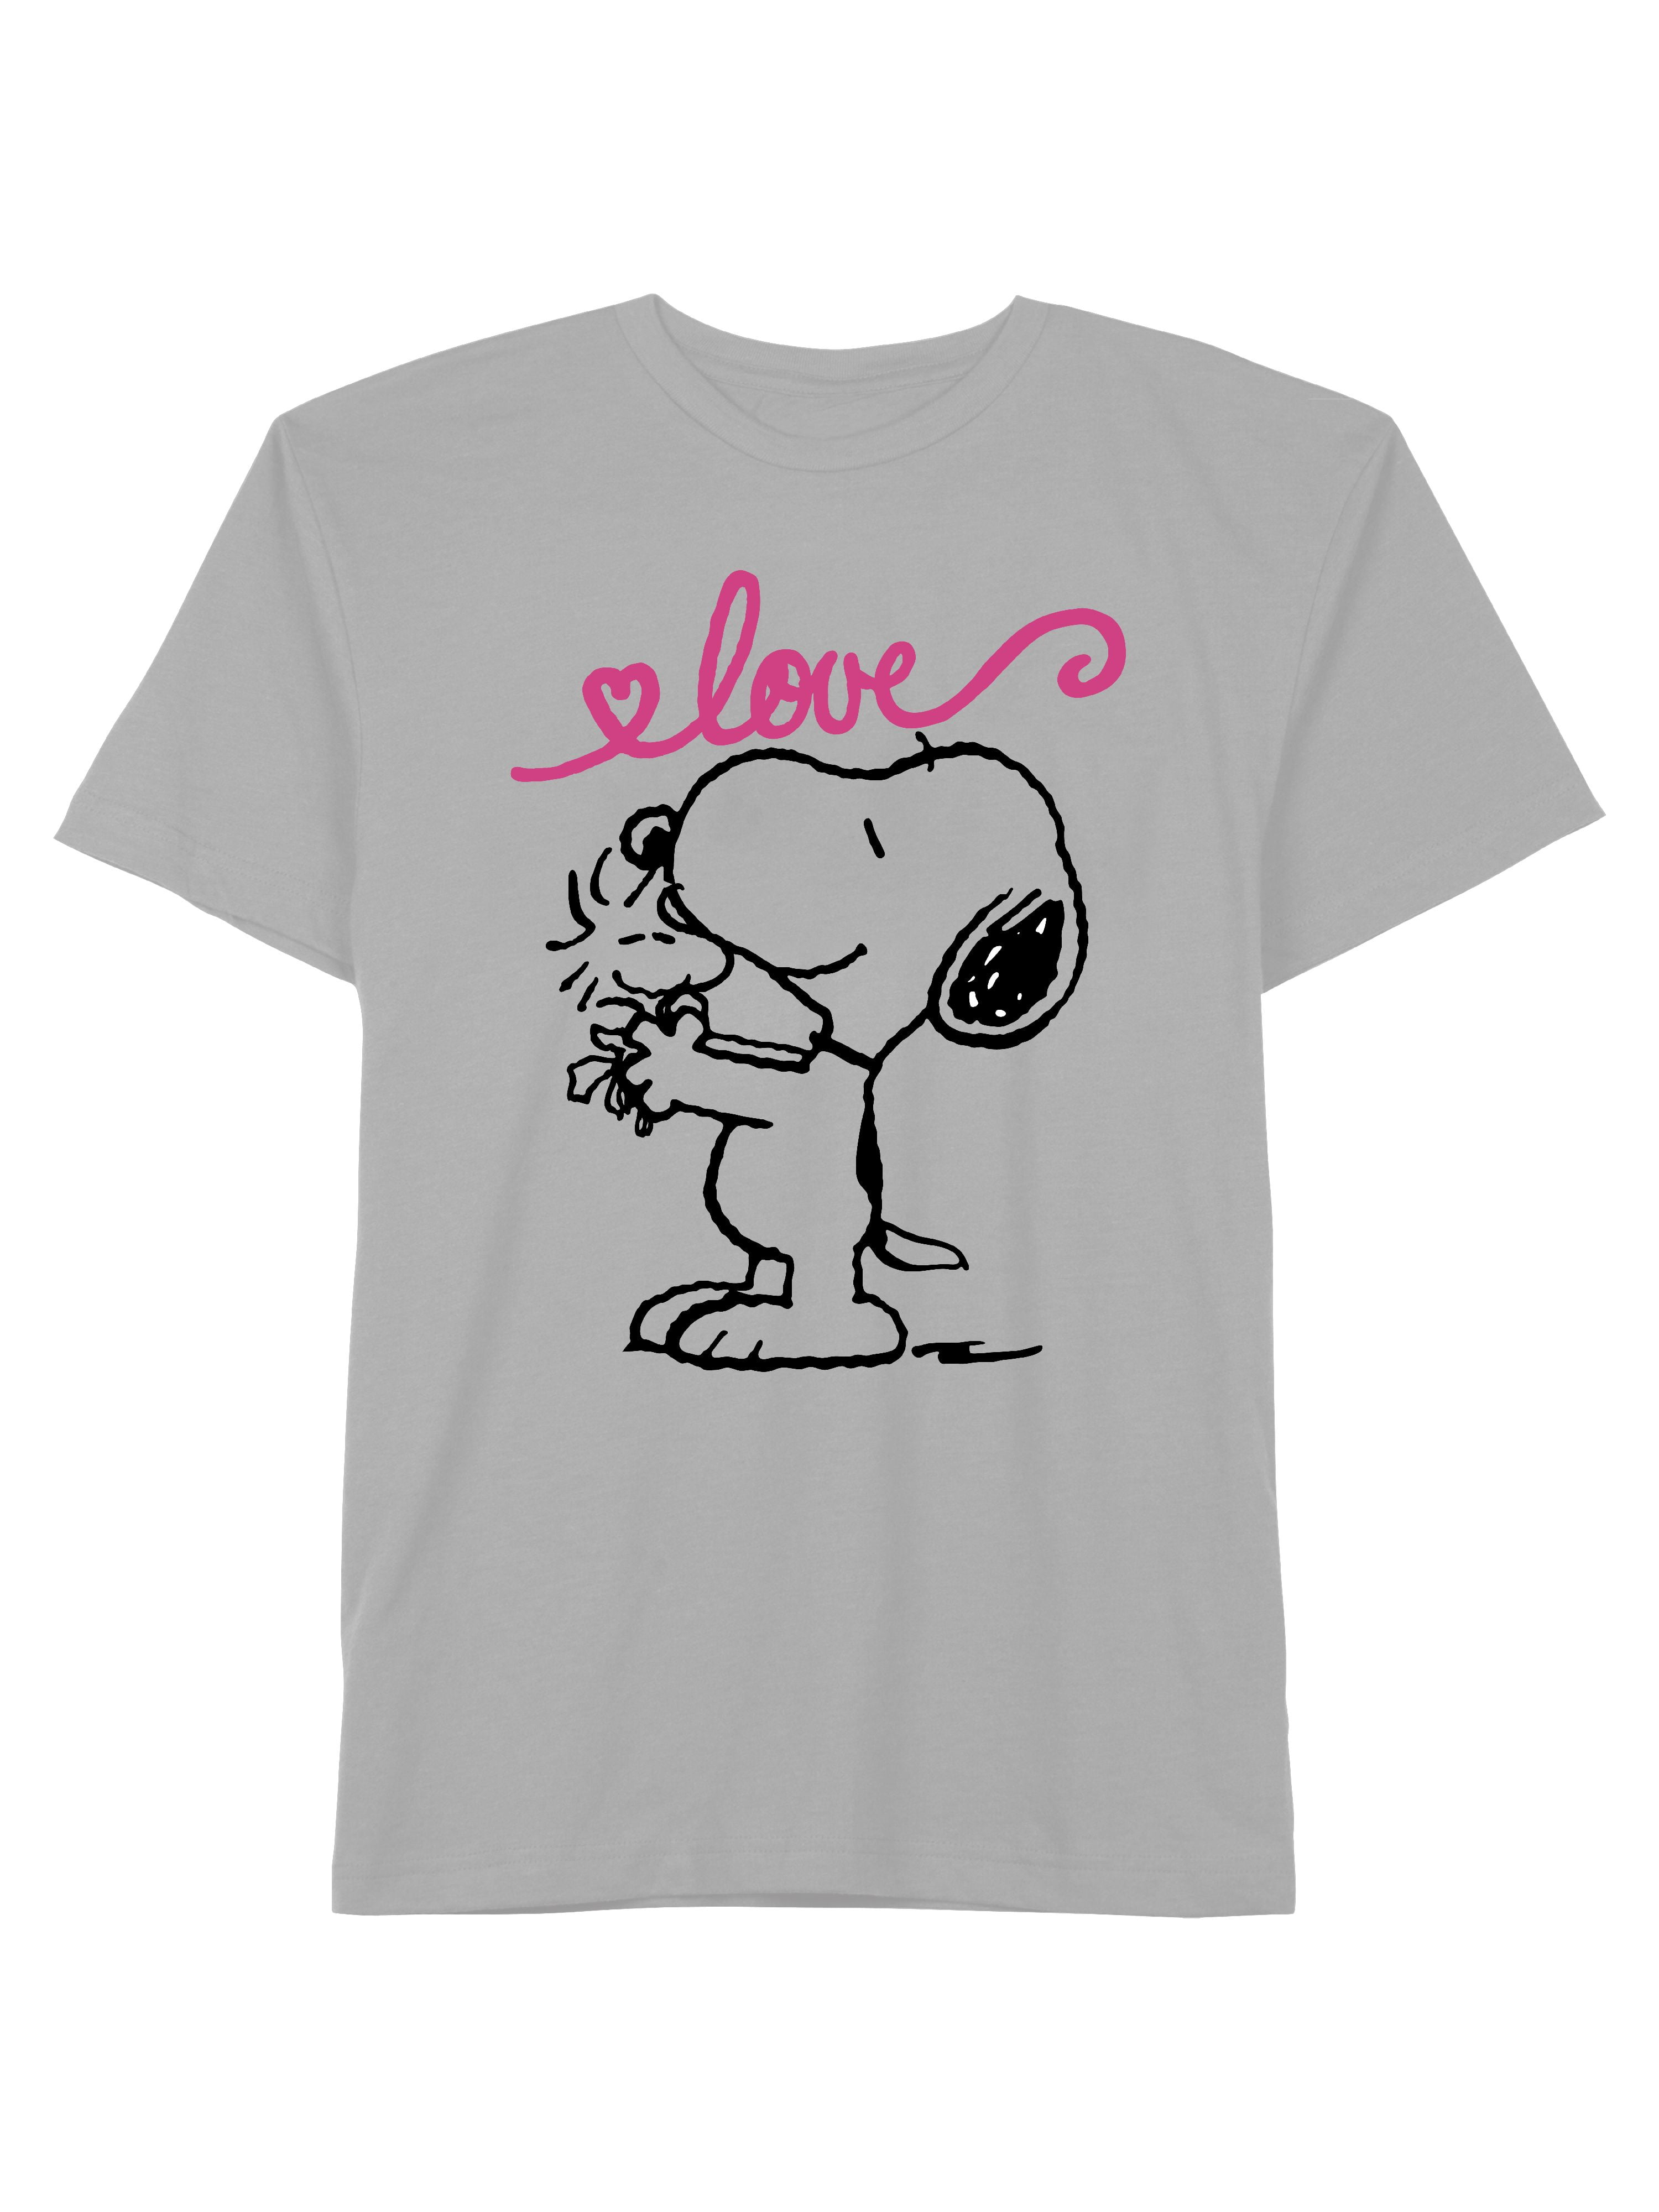 XL Peanuts Snoopy Cartoon T-shirts Ladies Sizes S